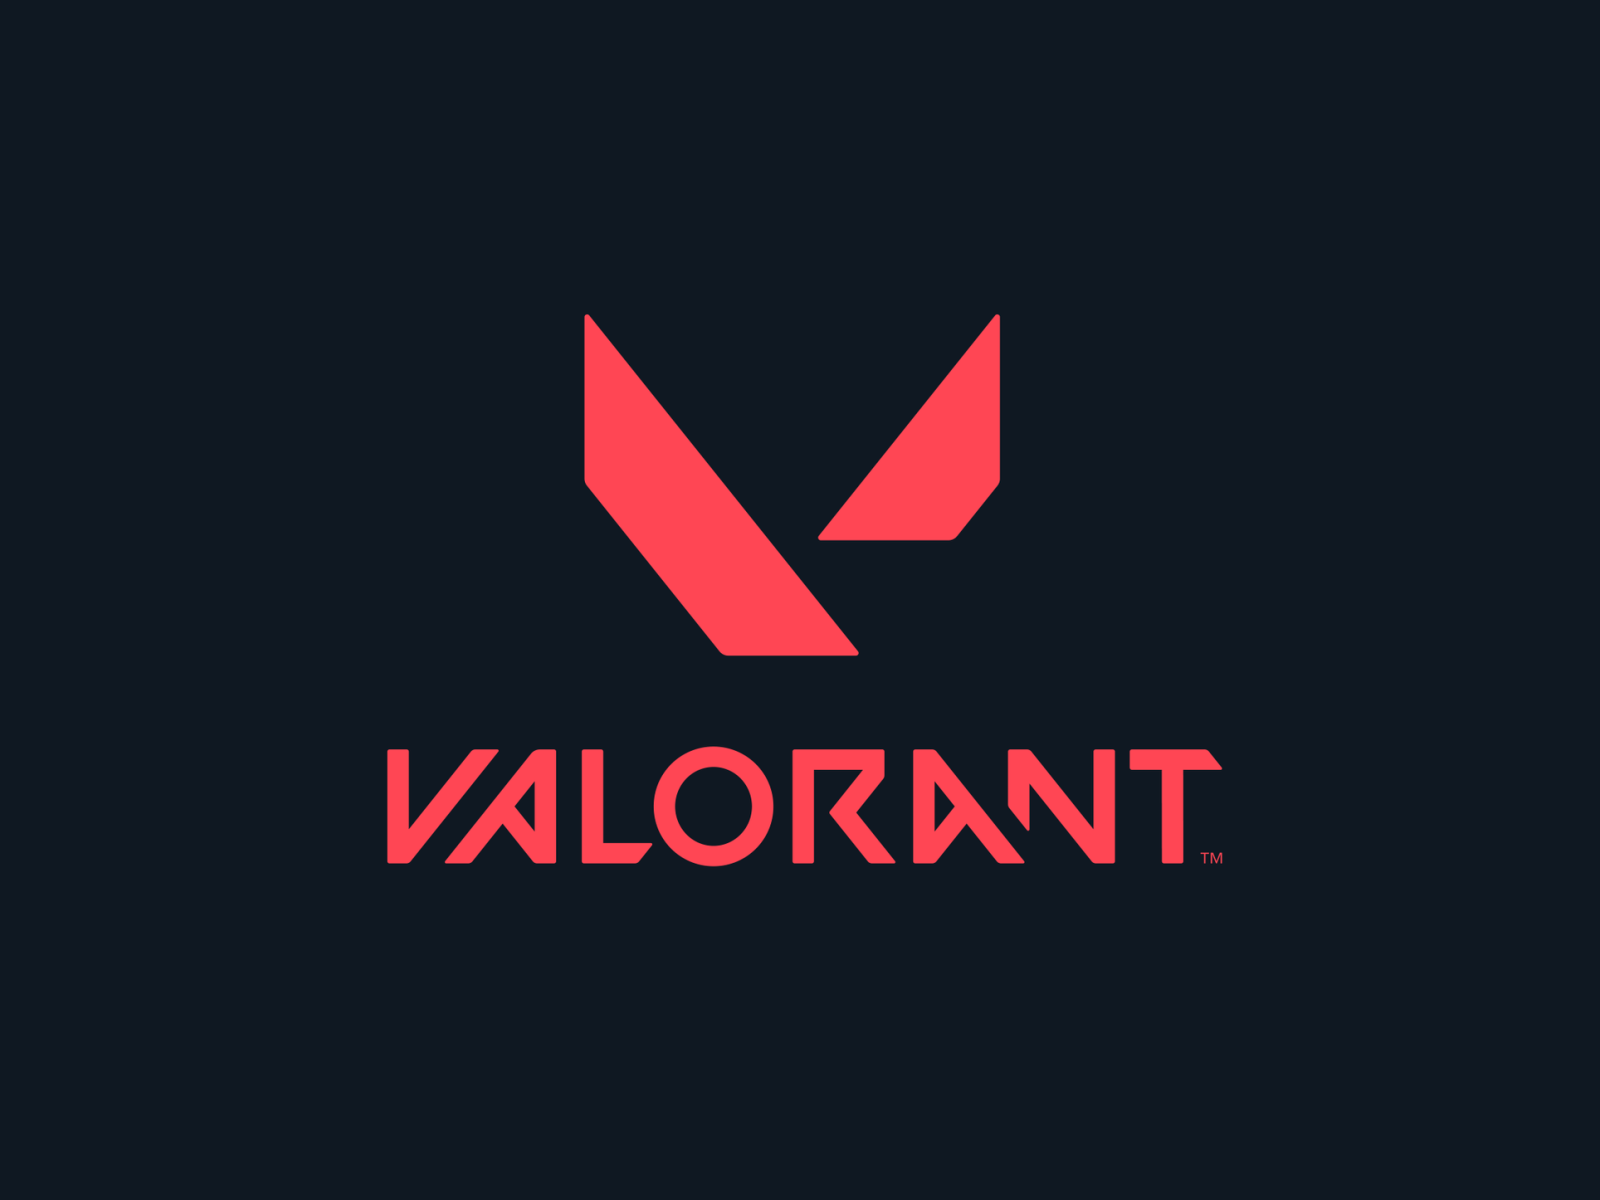 Hướng dẫn cách vẽ valorant logo đơn giản và nhanh chóng